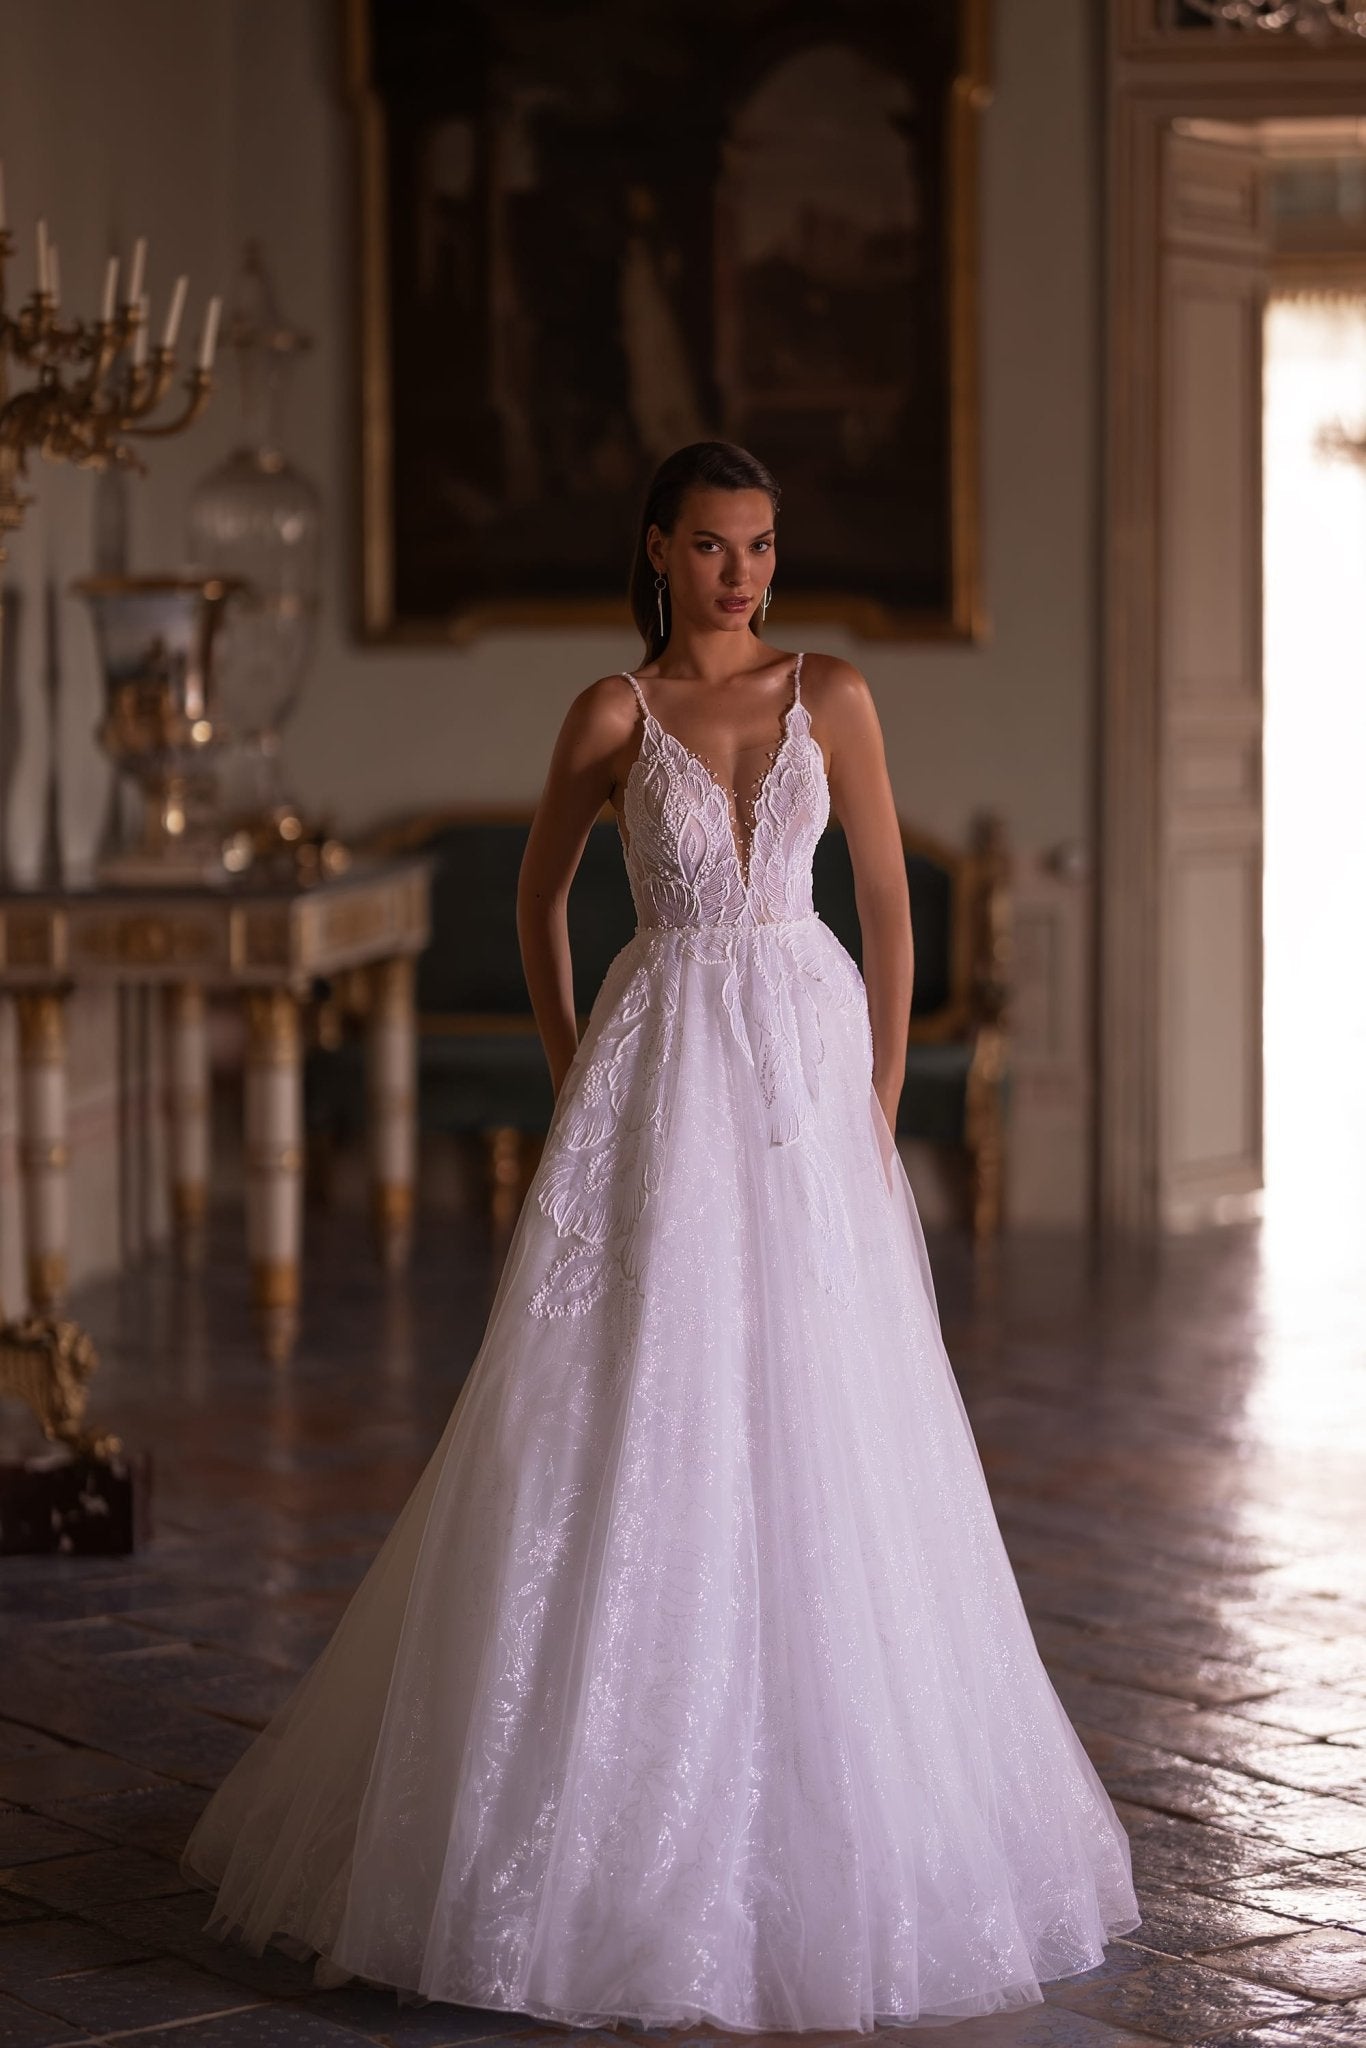 Radiant Lace Embellished Wedding Dress with Lush Skirt and Shiny Fabric, Plus Size Available - WonderlandByLilian